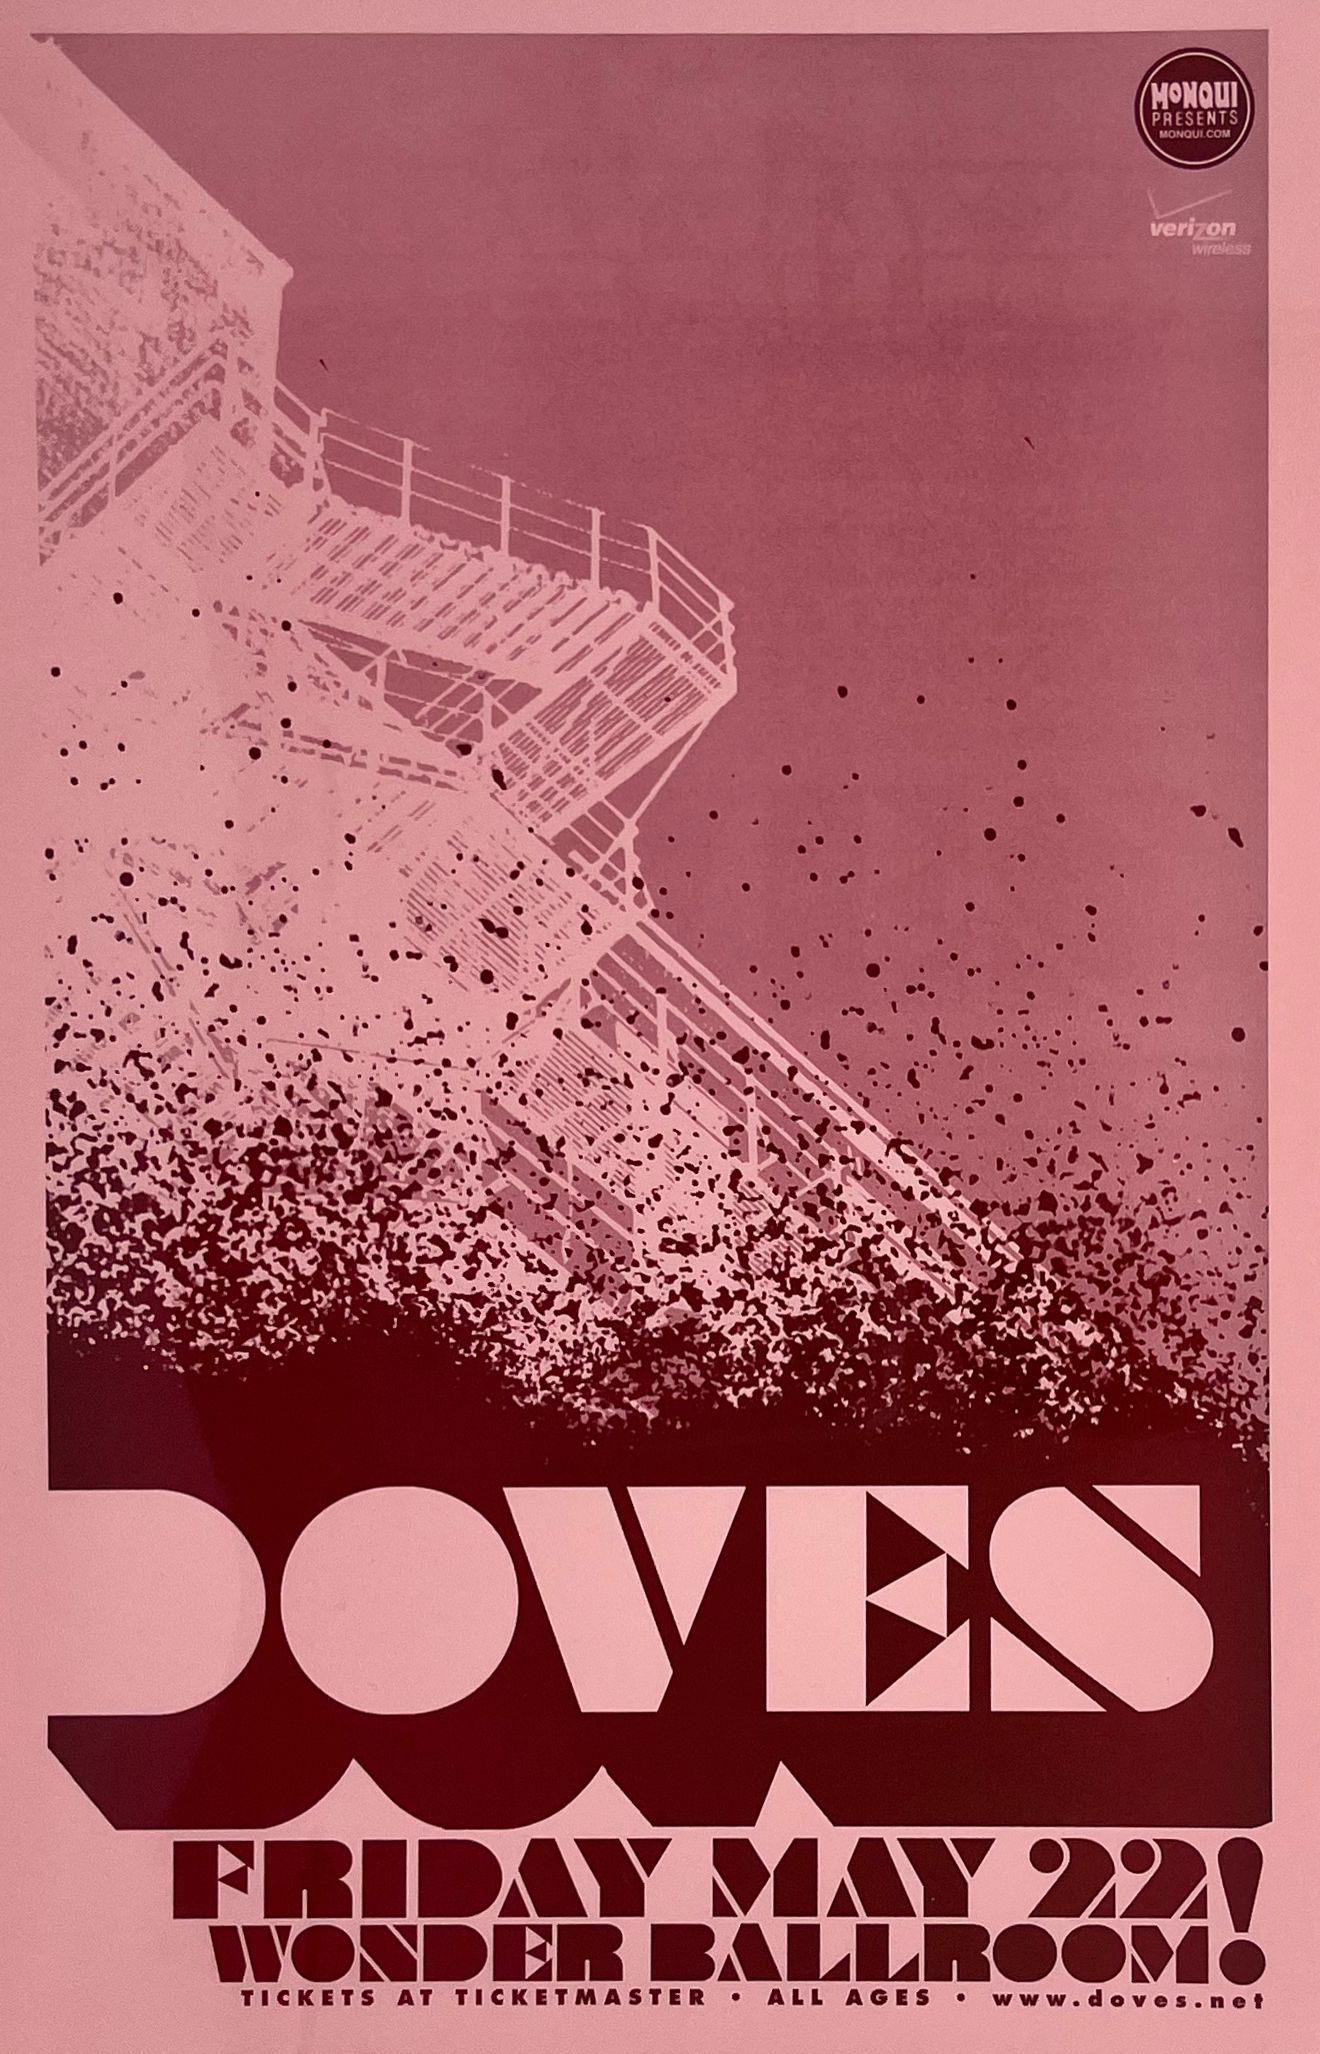 MXP-144.9 Doves Wonder Ballroom 2009 Concert Poster